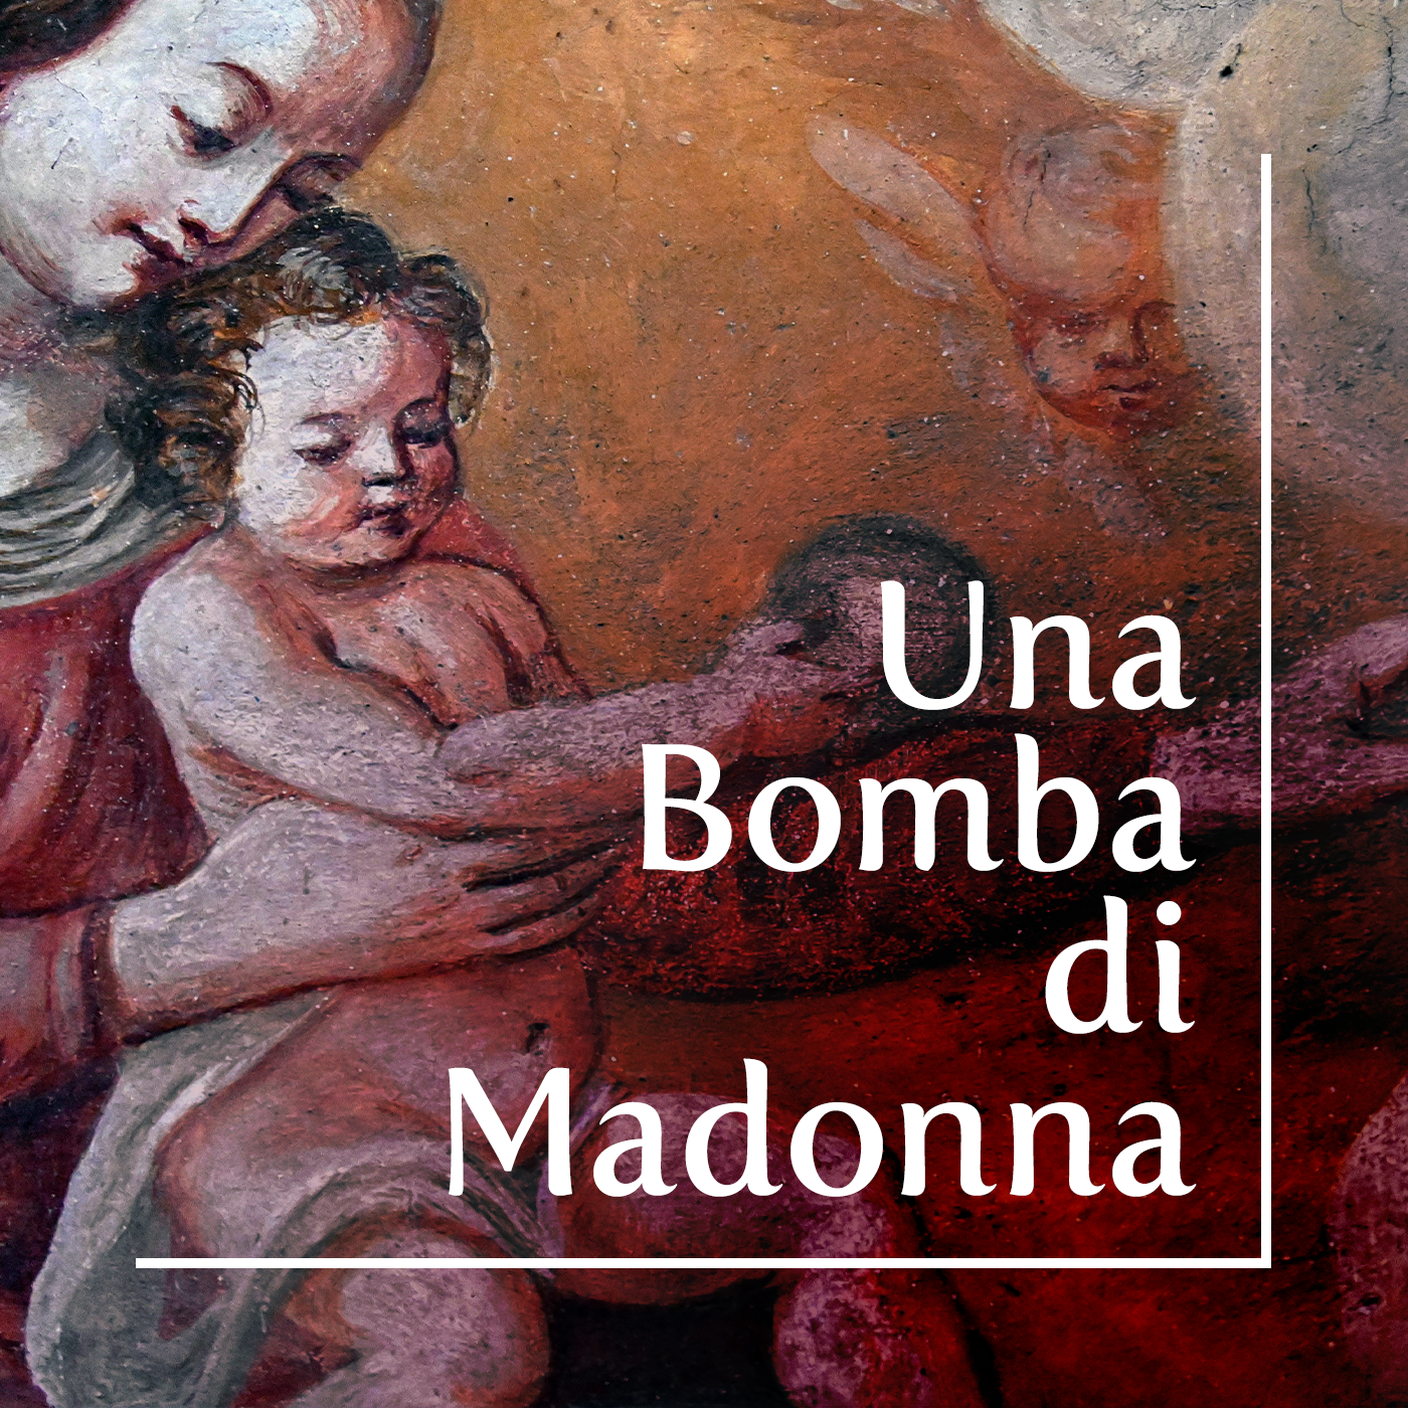 1:1 Una bomba di Madonna